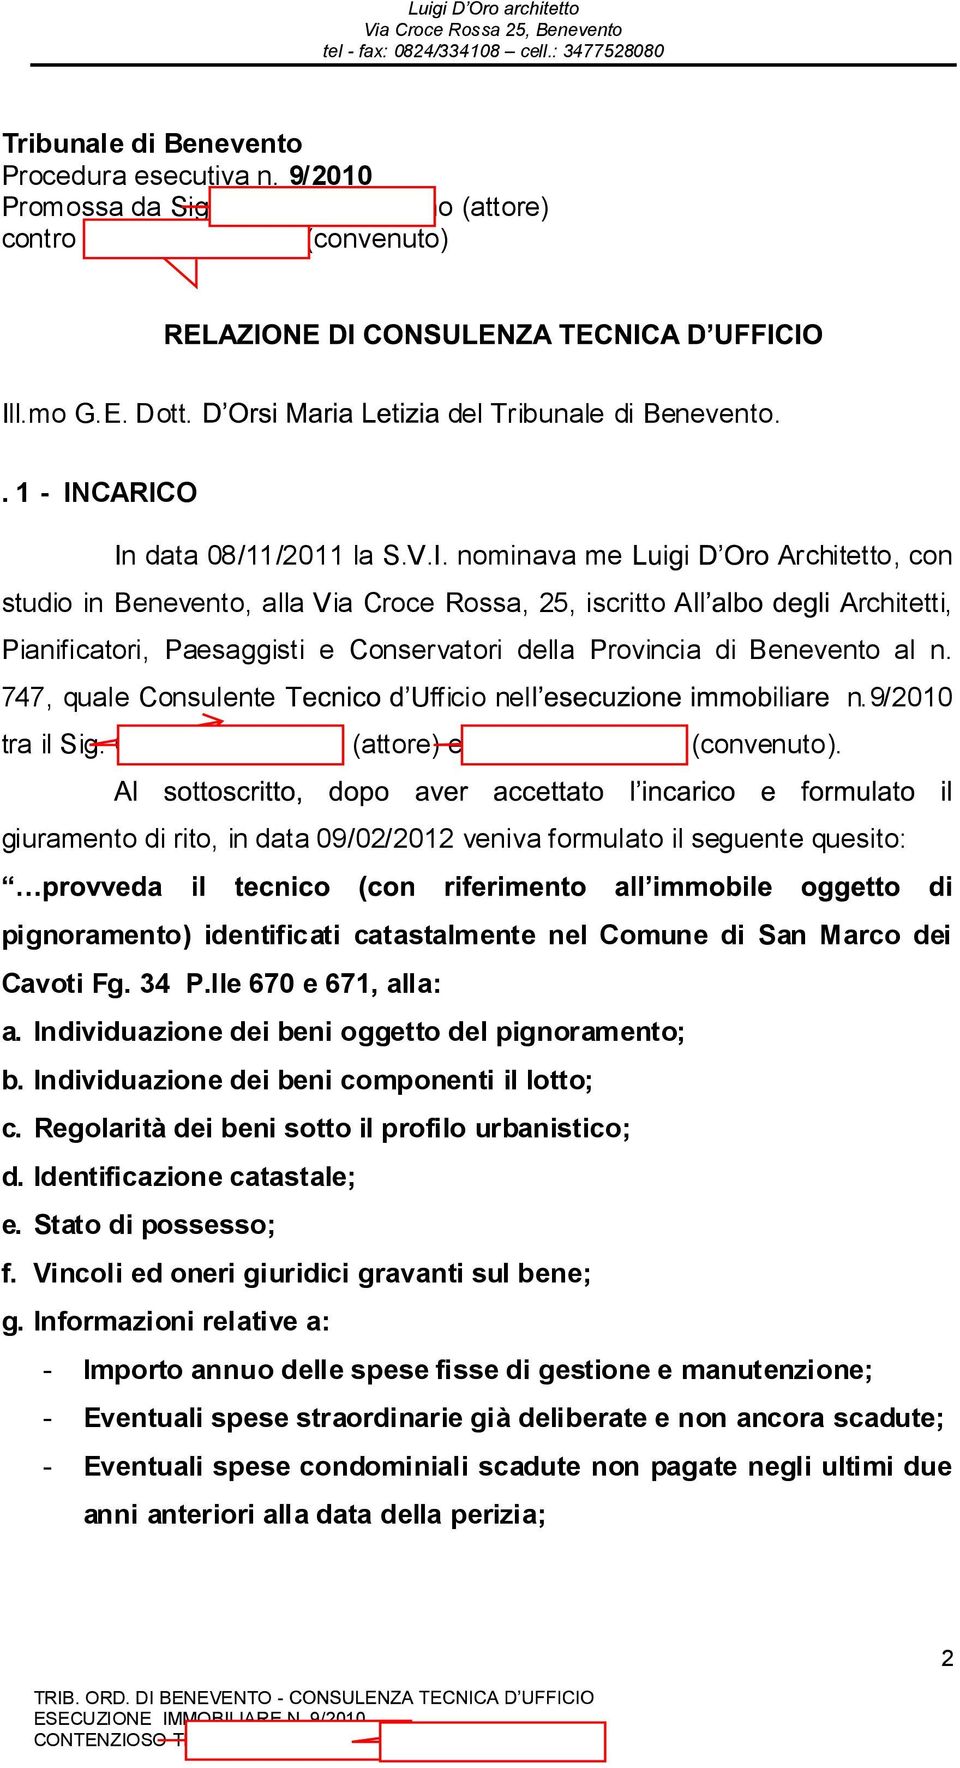 747, quale Consulente T Ufficio nel n.9/2010 tra il Sig. Costantini Benigno (attore) e Mac Marmi S.a.s. (convenuto).